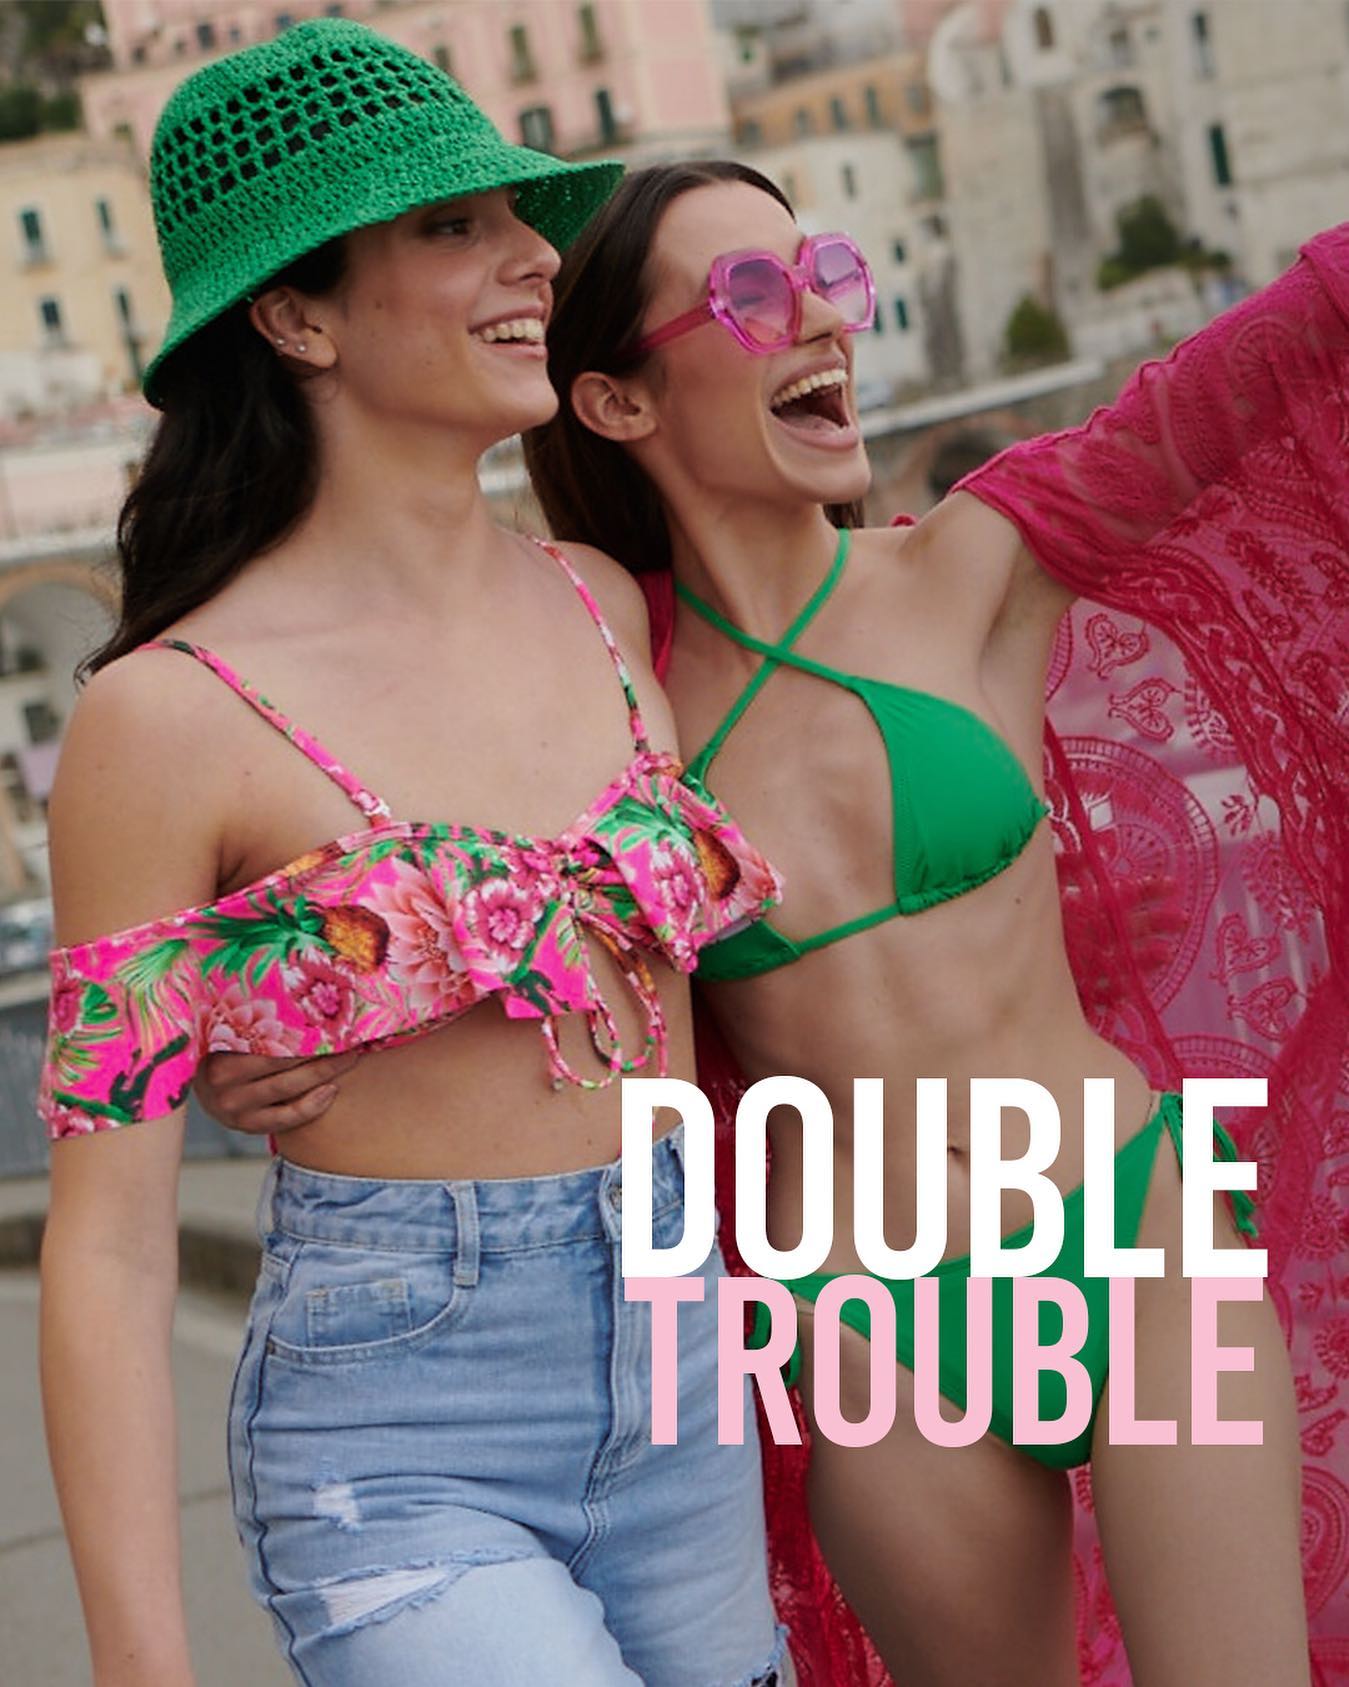 DOUBLE TROUBLE! 🔥🔥 Odkryj wakacyjną historię dwóch #reneegirls w słonecznej Italii! 🌞 Te dziewczyny nie lubią nudy, bawią się modą i kochają wyróżniać się z tłumu! 👥👱🏼‍♀️👩🏻👥 

Dołącz do modowej zabawy razem z renee i odkryj gorące fasony letnich sukienek, kolorowe stroje kąpielowe i najnowsze modele #reneeshoes! 🛍

Oznacz #bff z którą spędzisz swoje wakacje! ✨

👉🏼 Bikini Orathe
👉🏼 Bikini Deineusa
👉🏼 Narzutka Geesey

#reneeDOUBLETROUBLE #reneepl #renee #italia #fashion #fashionstyle #ootd #ootdpl #outfit #style #trend #italy #moda #outfitinspiration